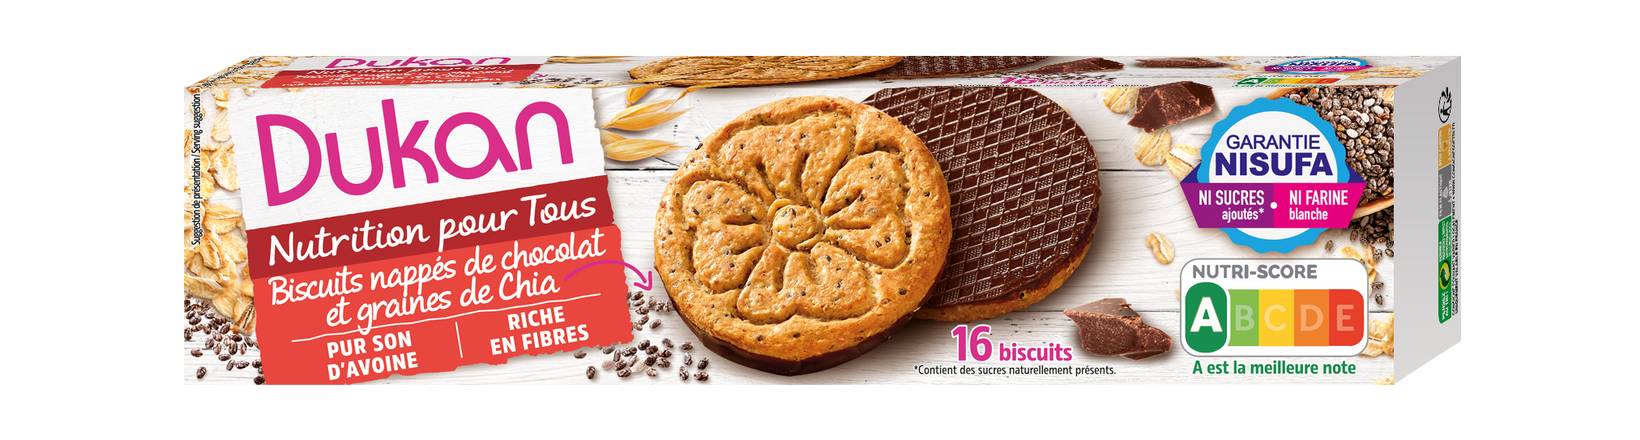 Dukan - Biscuits nappés de chocolat et graines de chia (16 pièces)